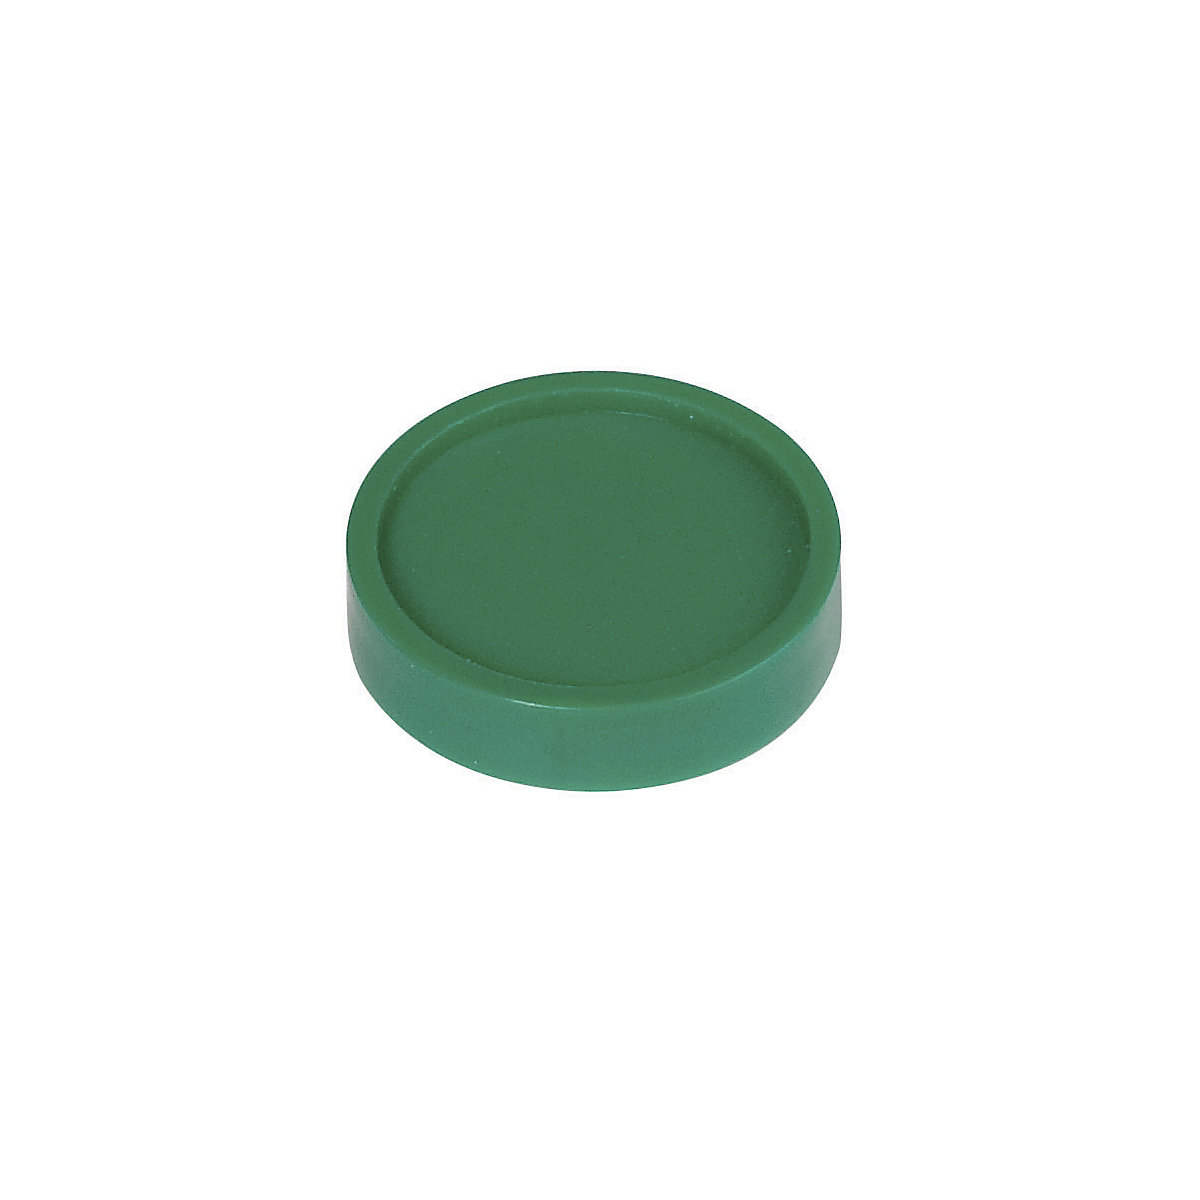 Calamite rotonde – MAUL, Ø 30 mm, conf. 100 pz., verde-3